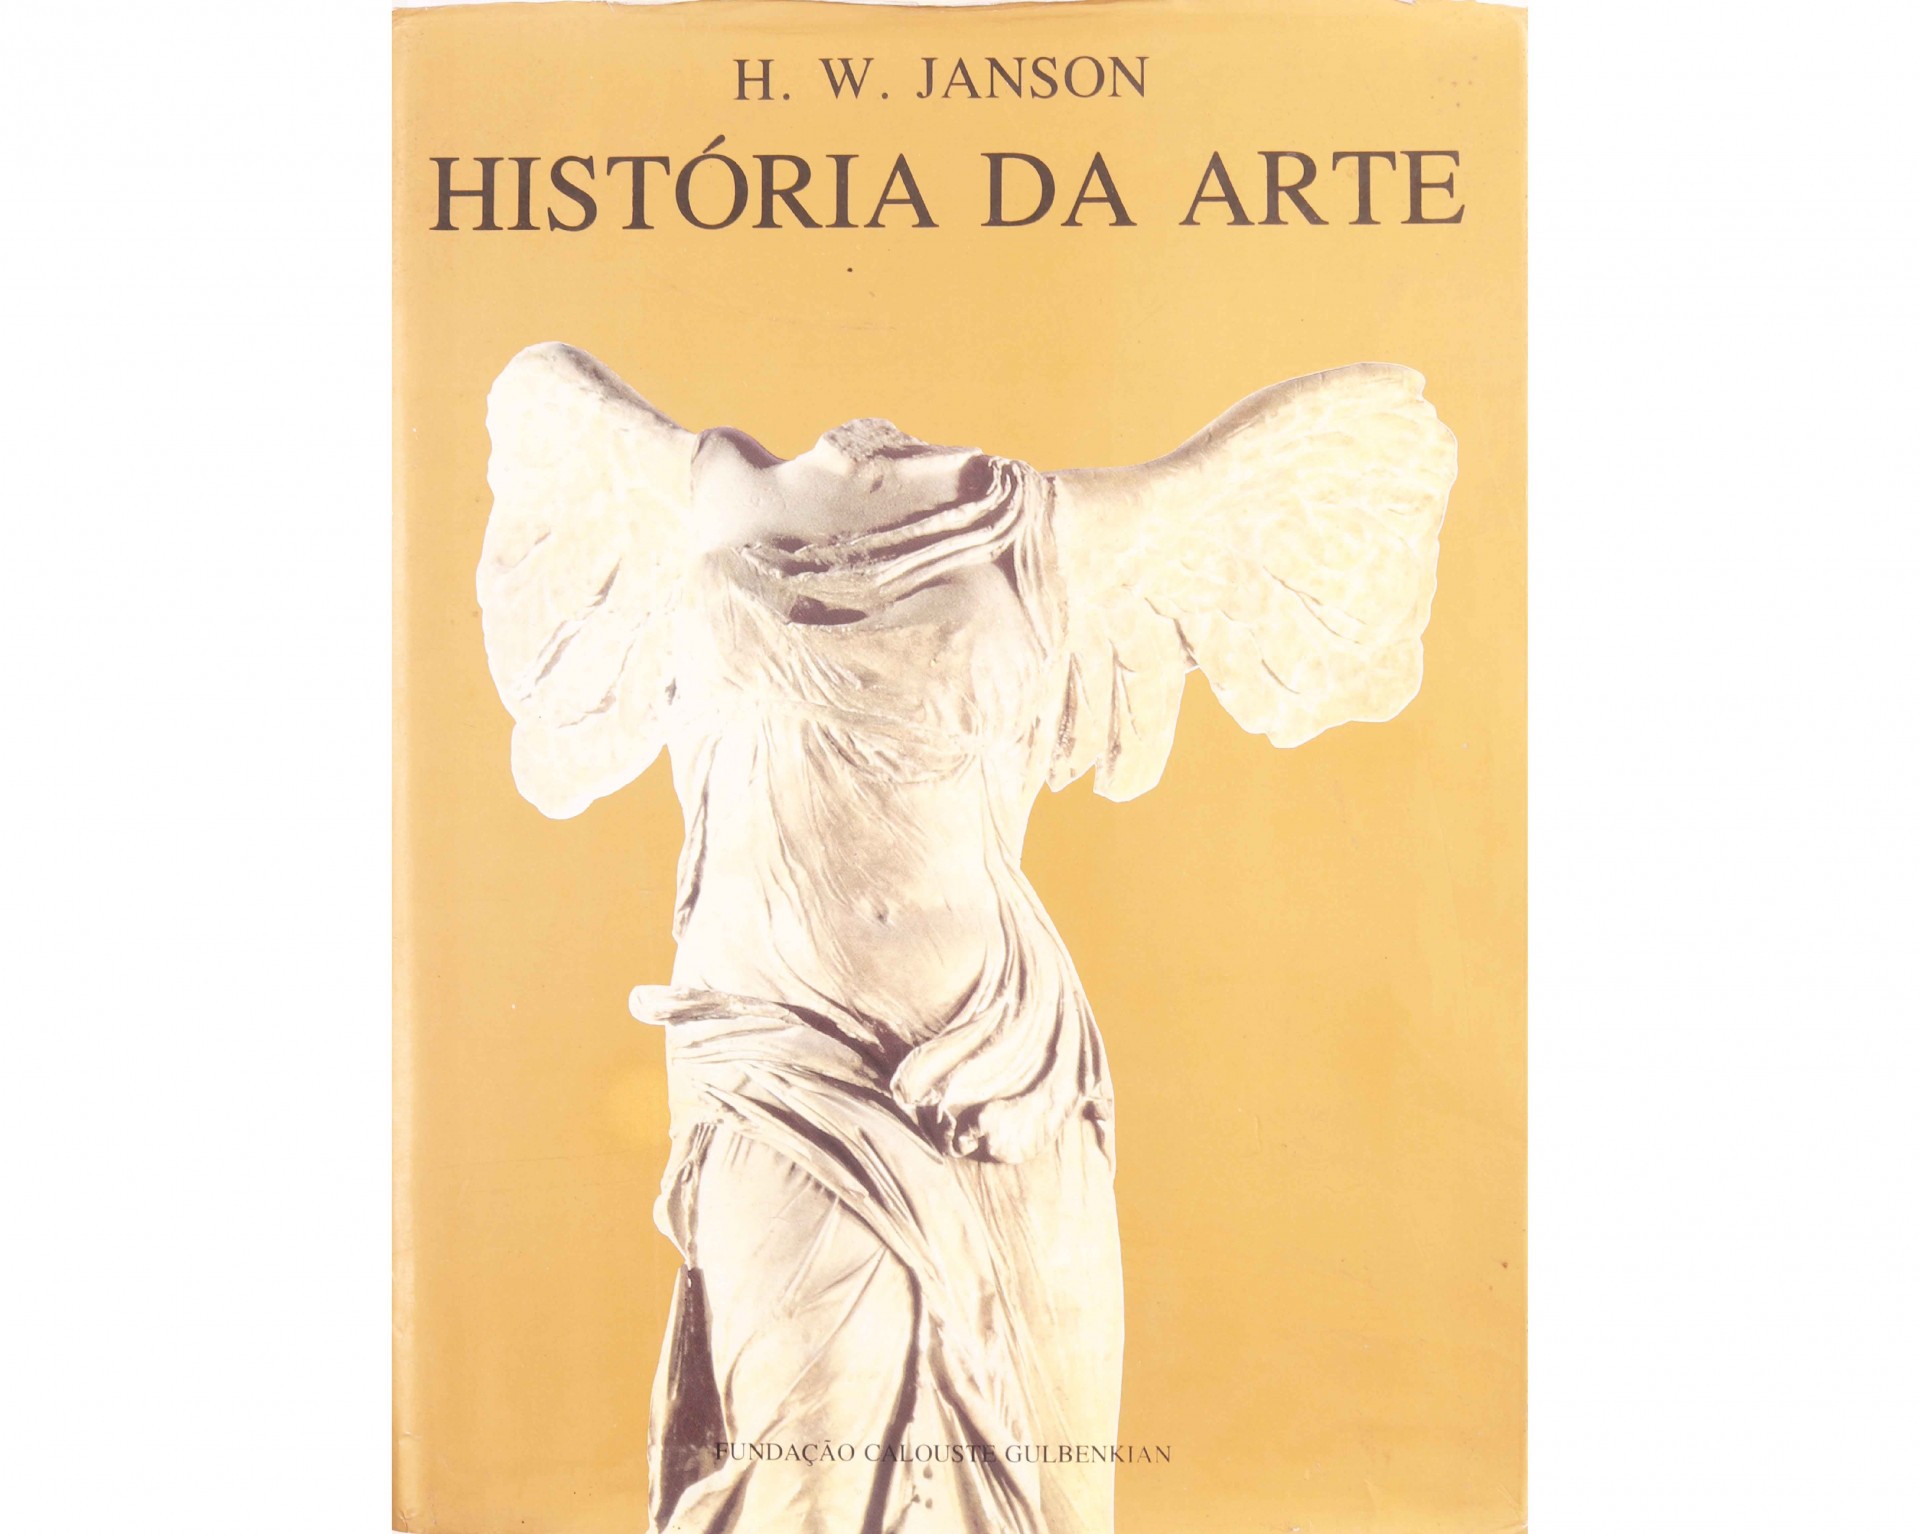 HistÓria Da Arte Leiloes Artbid 6807